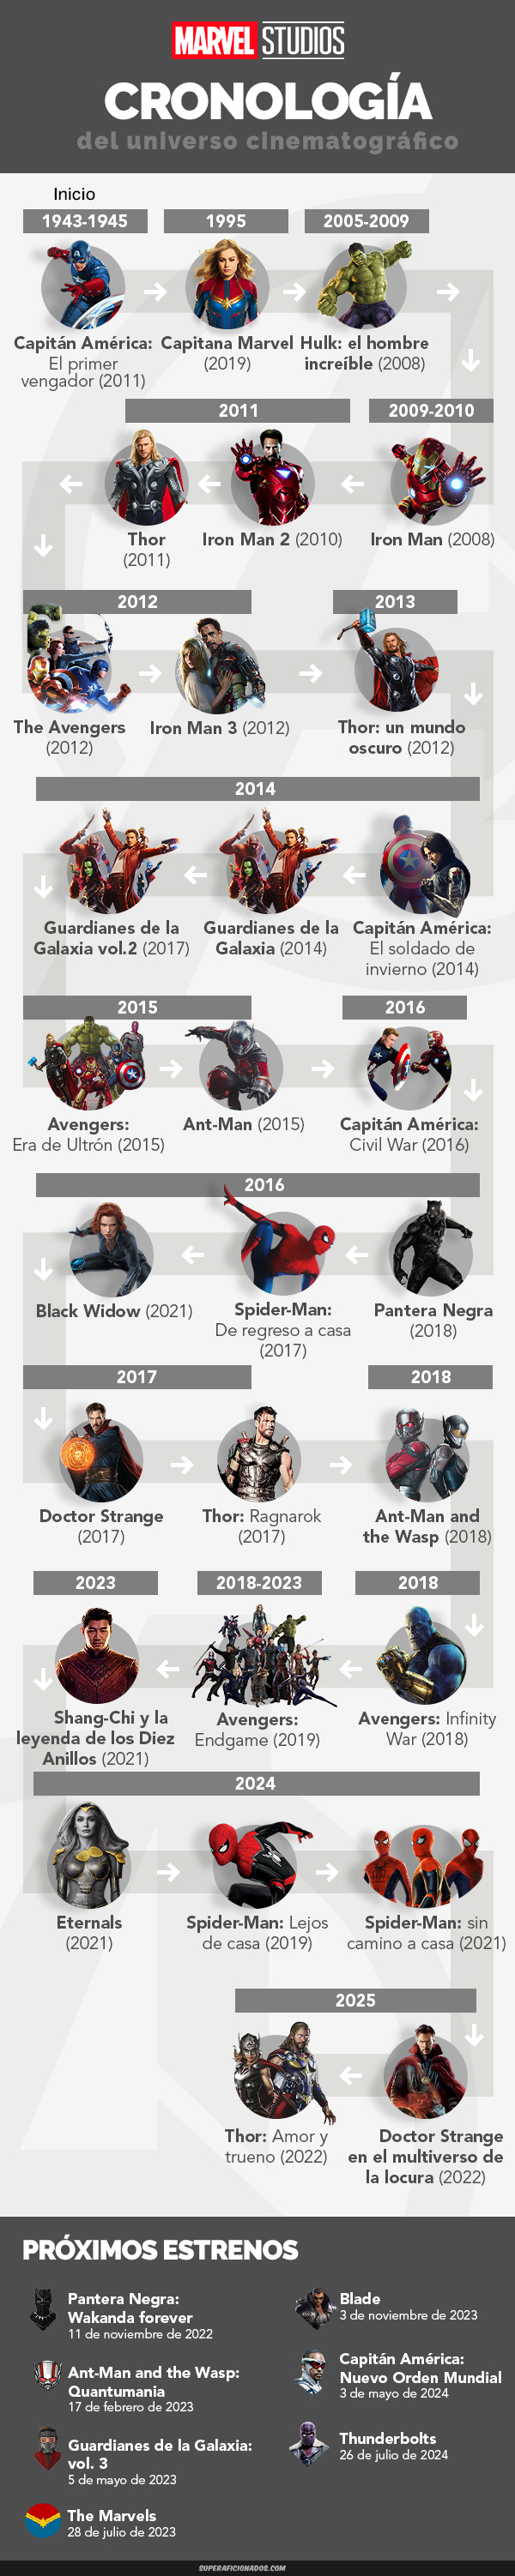 Infografía Marvel: Cronología de películas